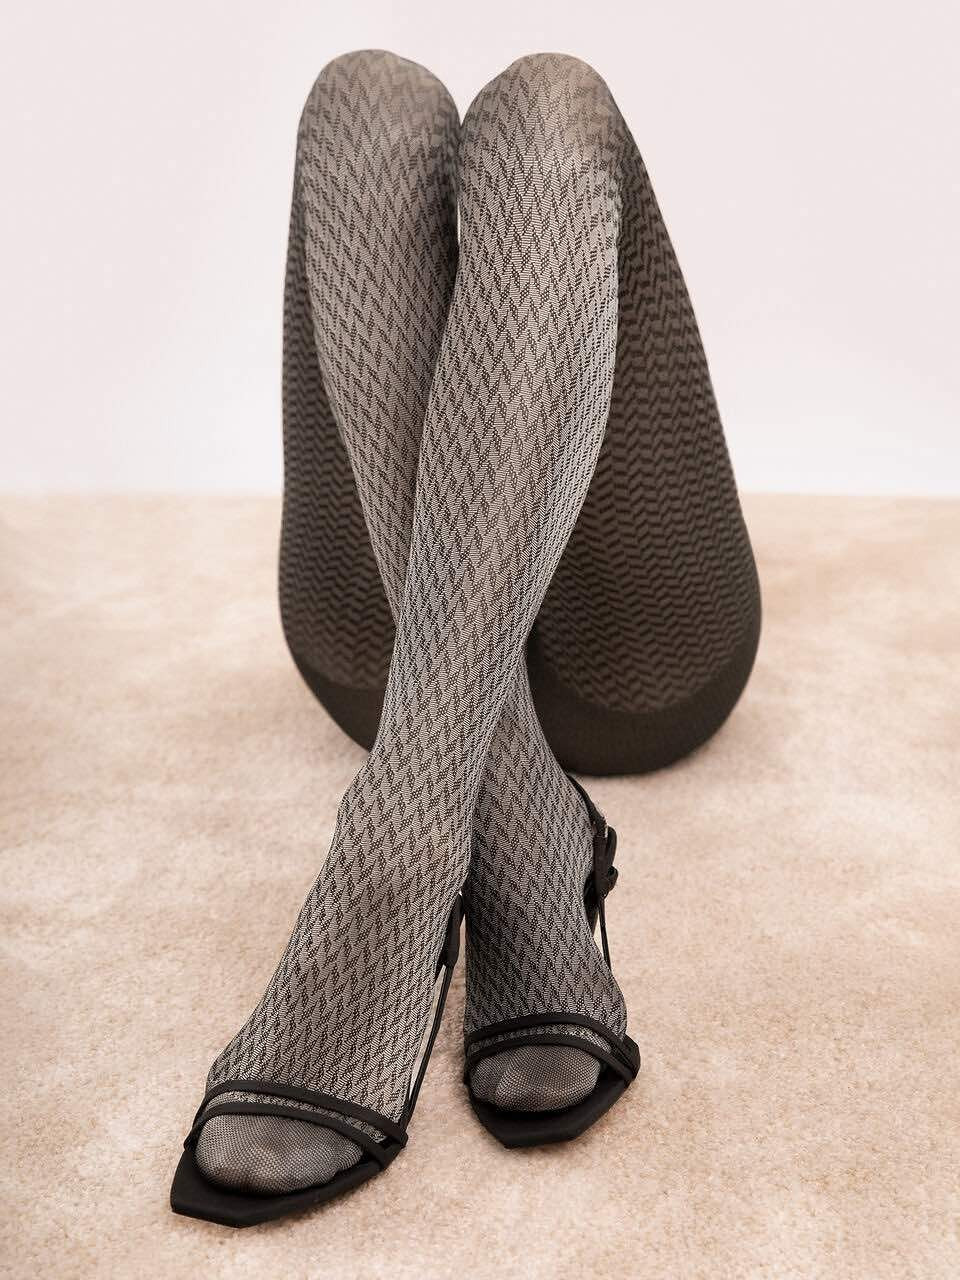 Dámské punčochové kalhoty Cinematic G6096 40 den Šedá vzor - Fiore šedá vzor 3-M